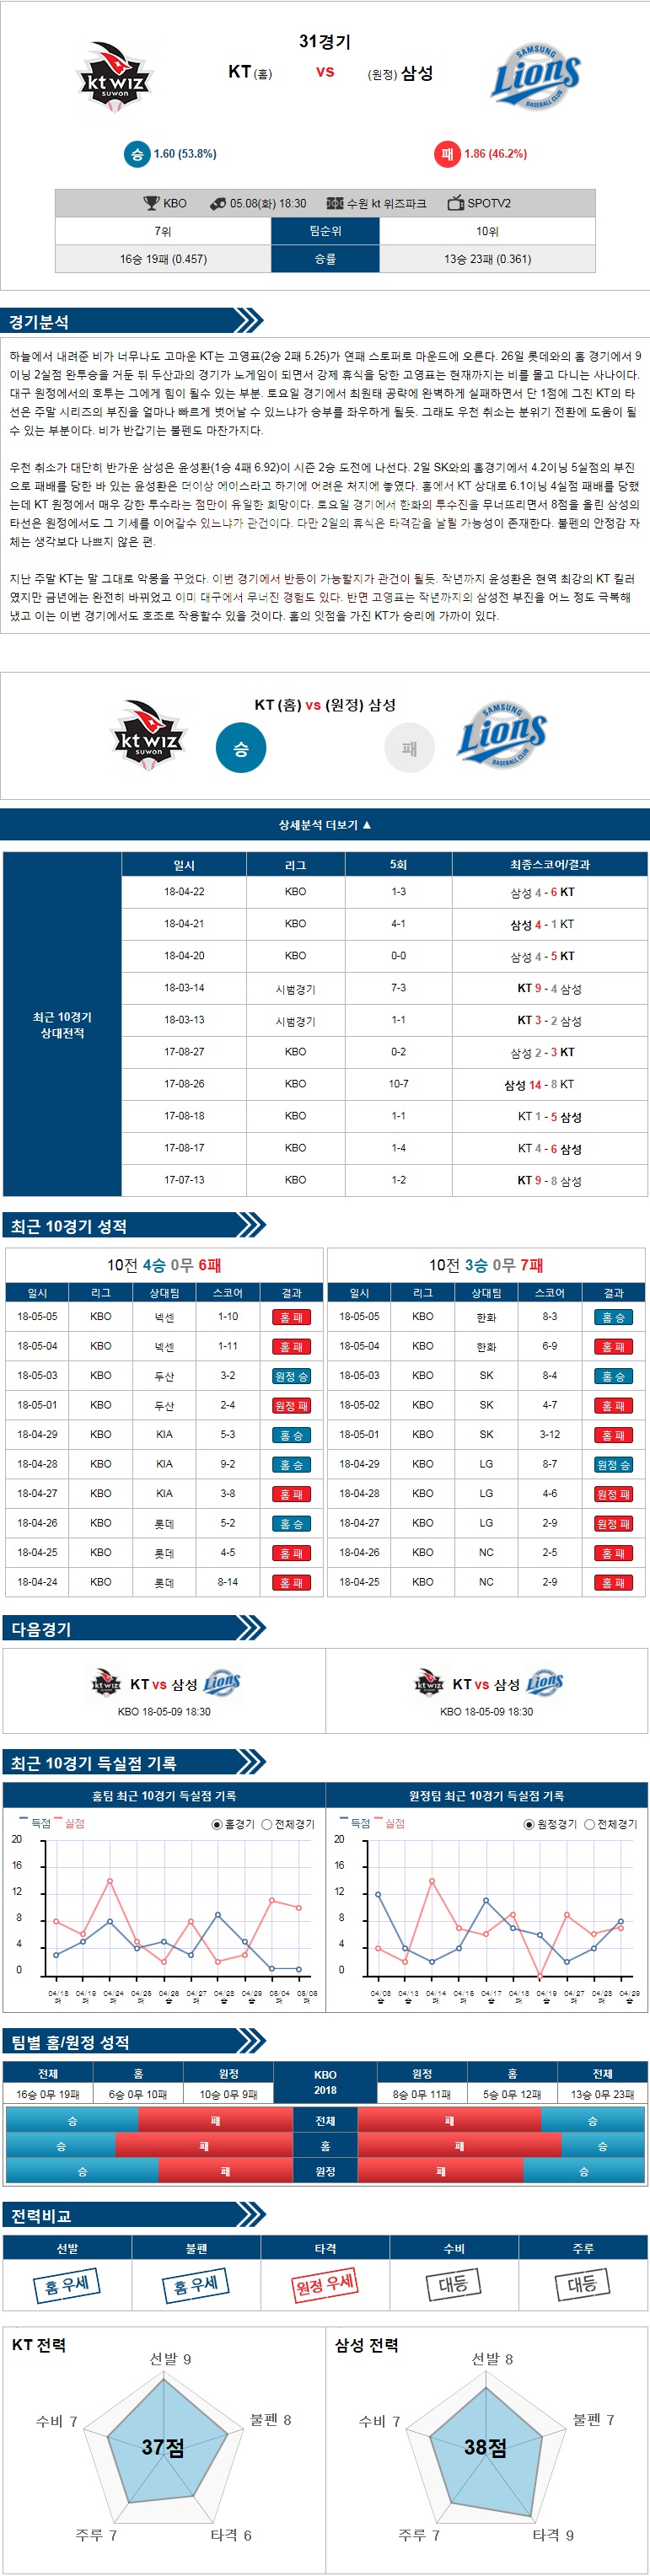 5-08 [KBO] 18:30 야구분석 KT vs 삼성